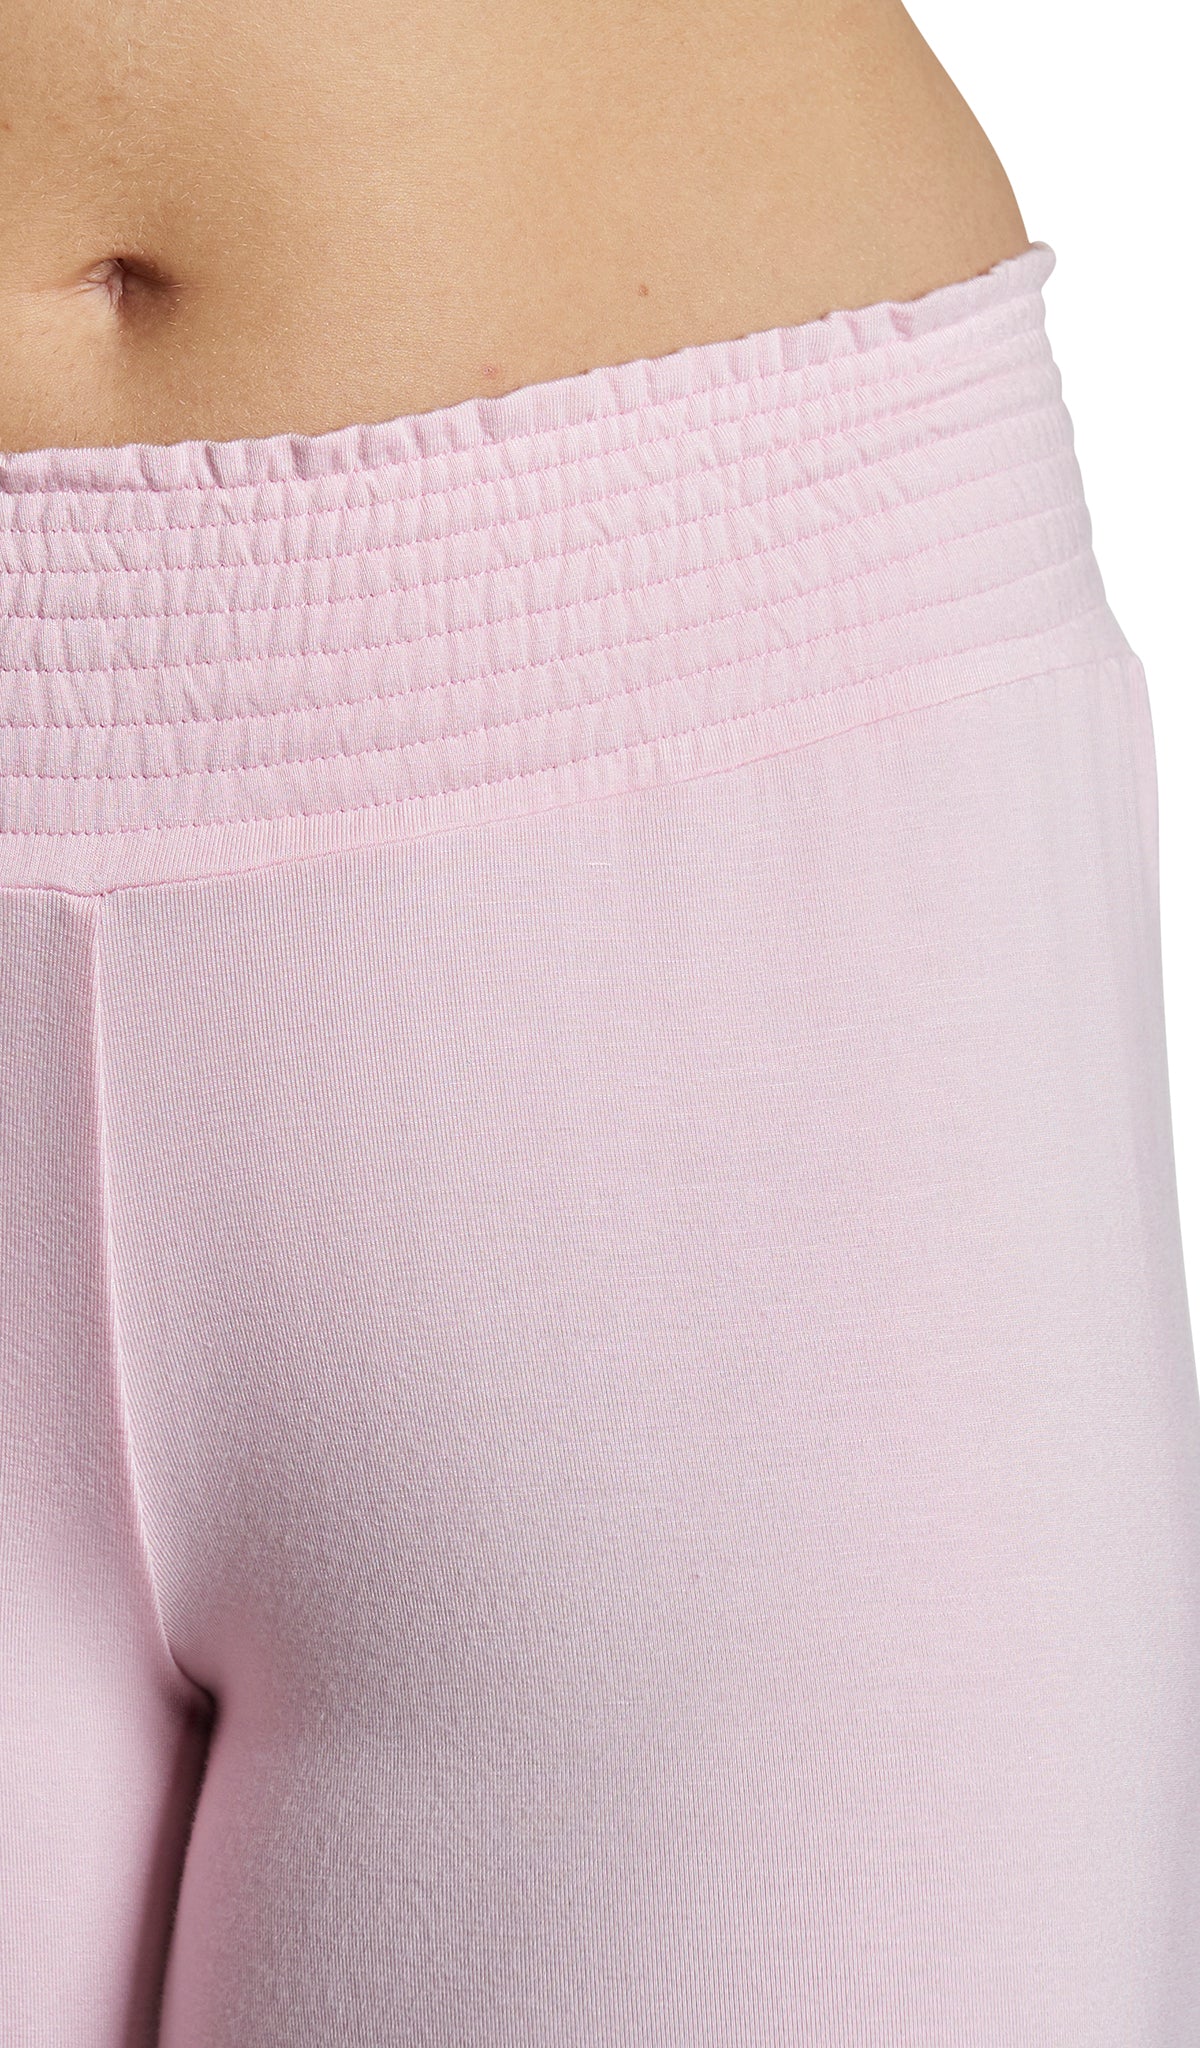 Blush Analise 3-Piece Set, detailed shot of smocked elastic waistband.